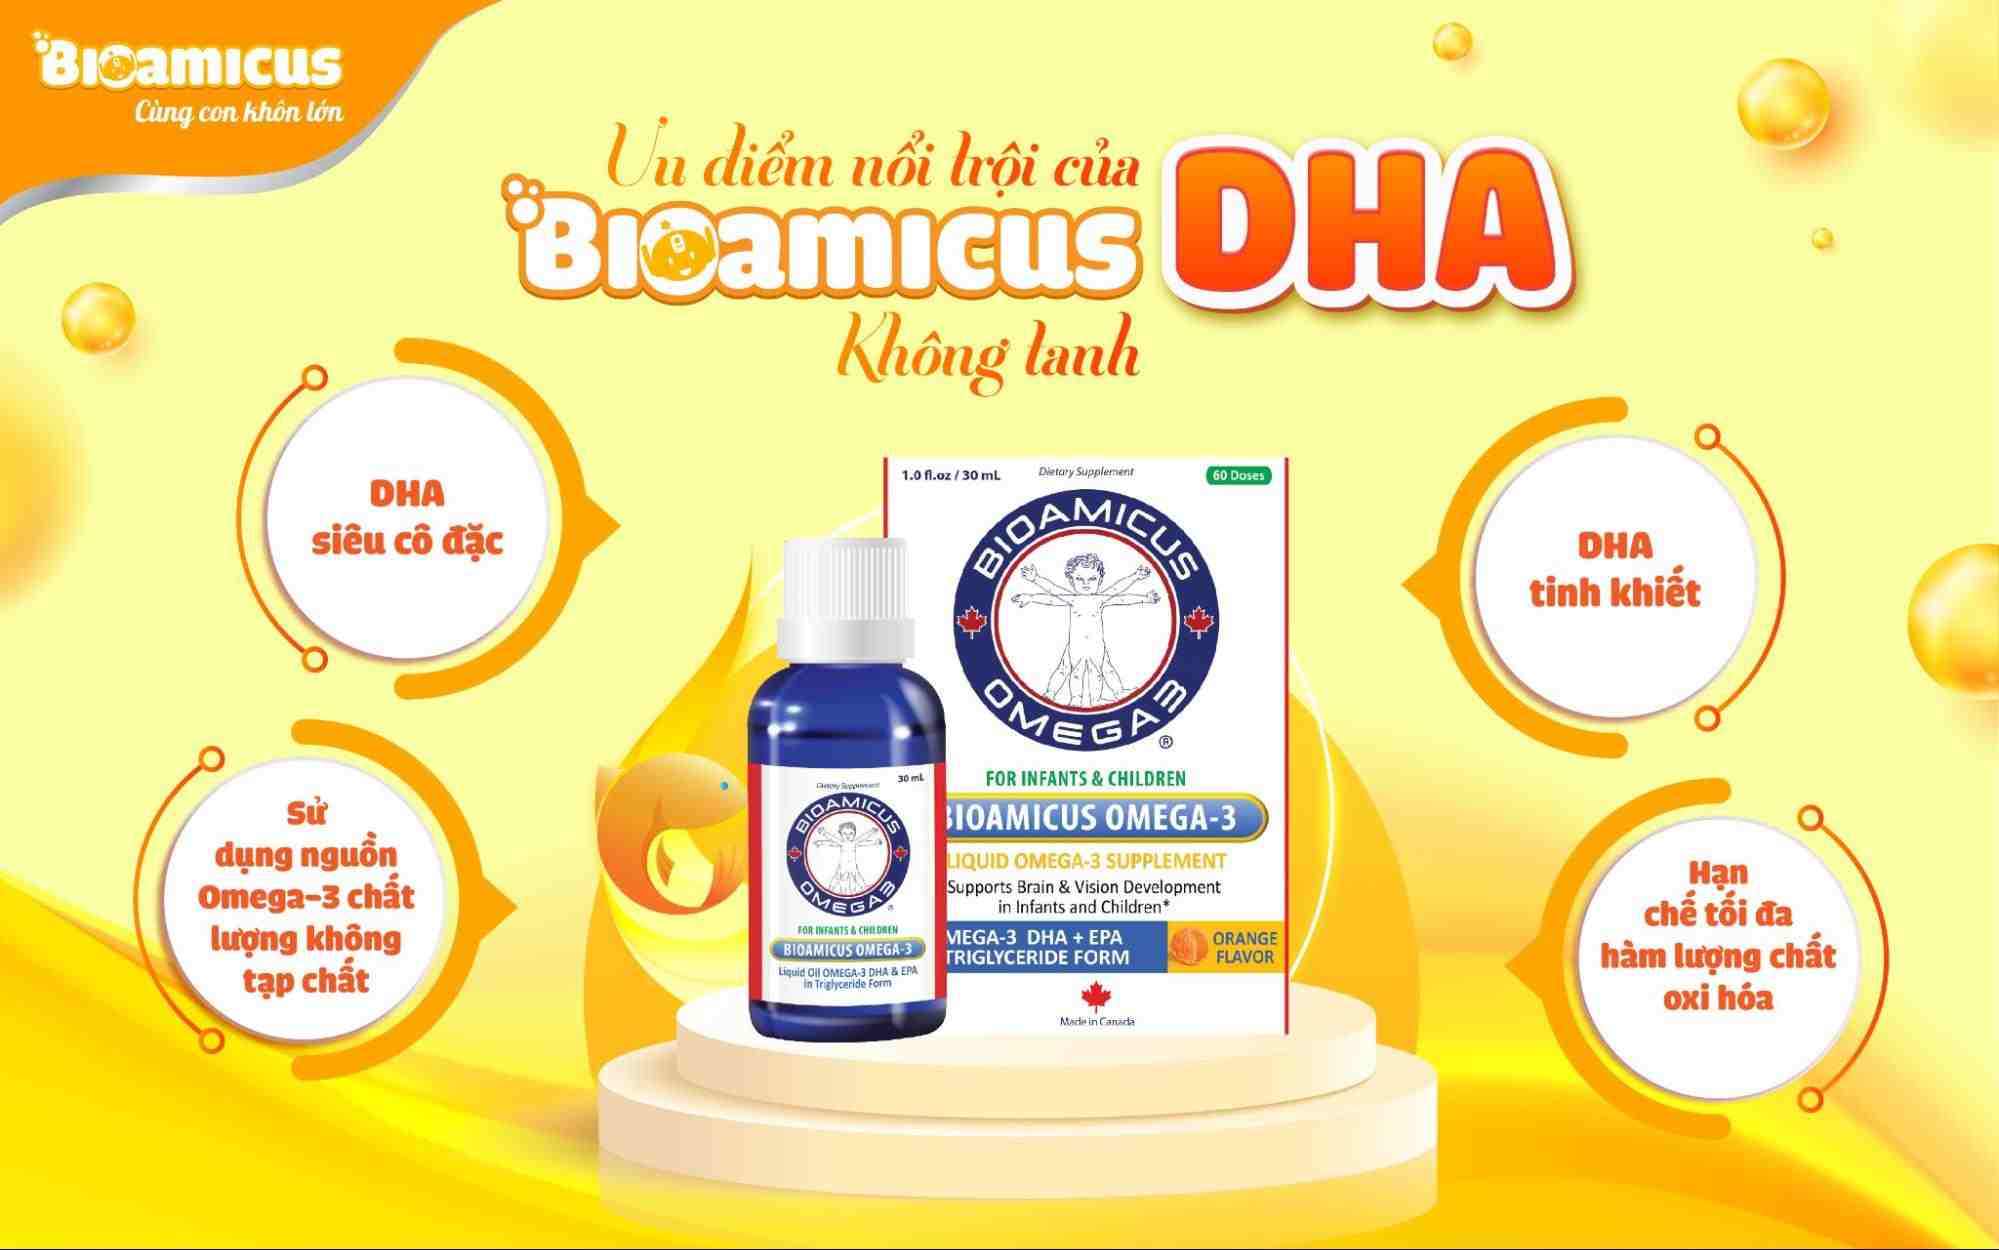 BioAmicus DHA - Phương pháp bổ sung DHA đơn giản cho bé thông minh, sáng mắt 